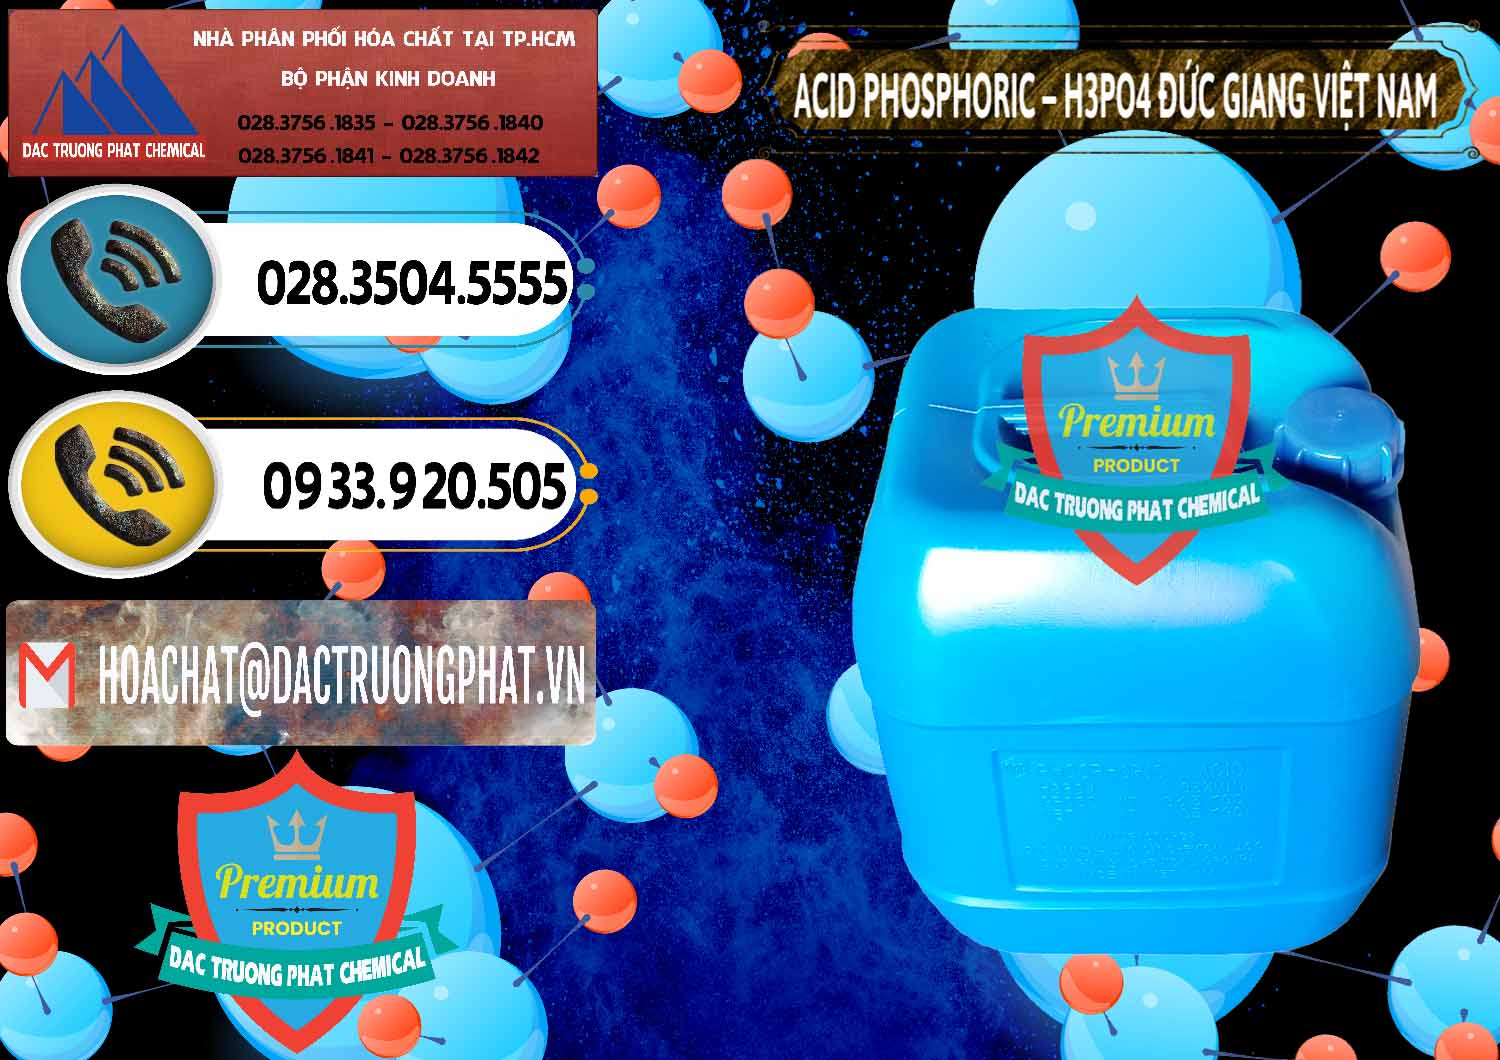 Nơi chuyên kinh doanh và phân phối Axit Phosphoric - Acid Phosphoric H3PO4 85% Đức Giang Việt Nam - 0184 - Chuyên cung cấp - phân phối hóa chất tại TP.HCM - hoachatdetnhuom.vn